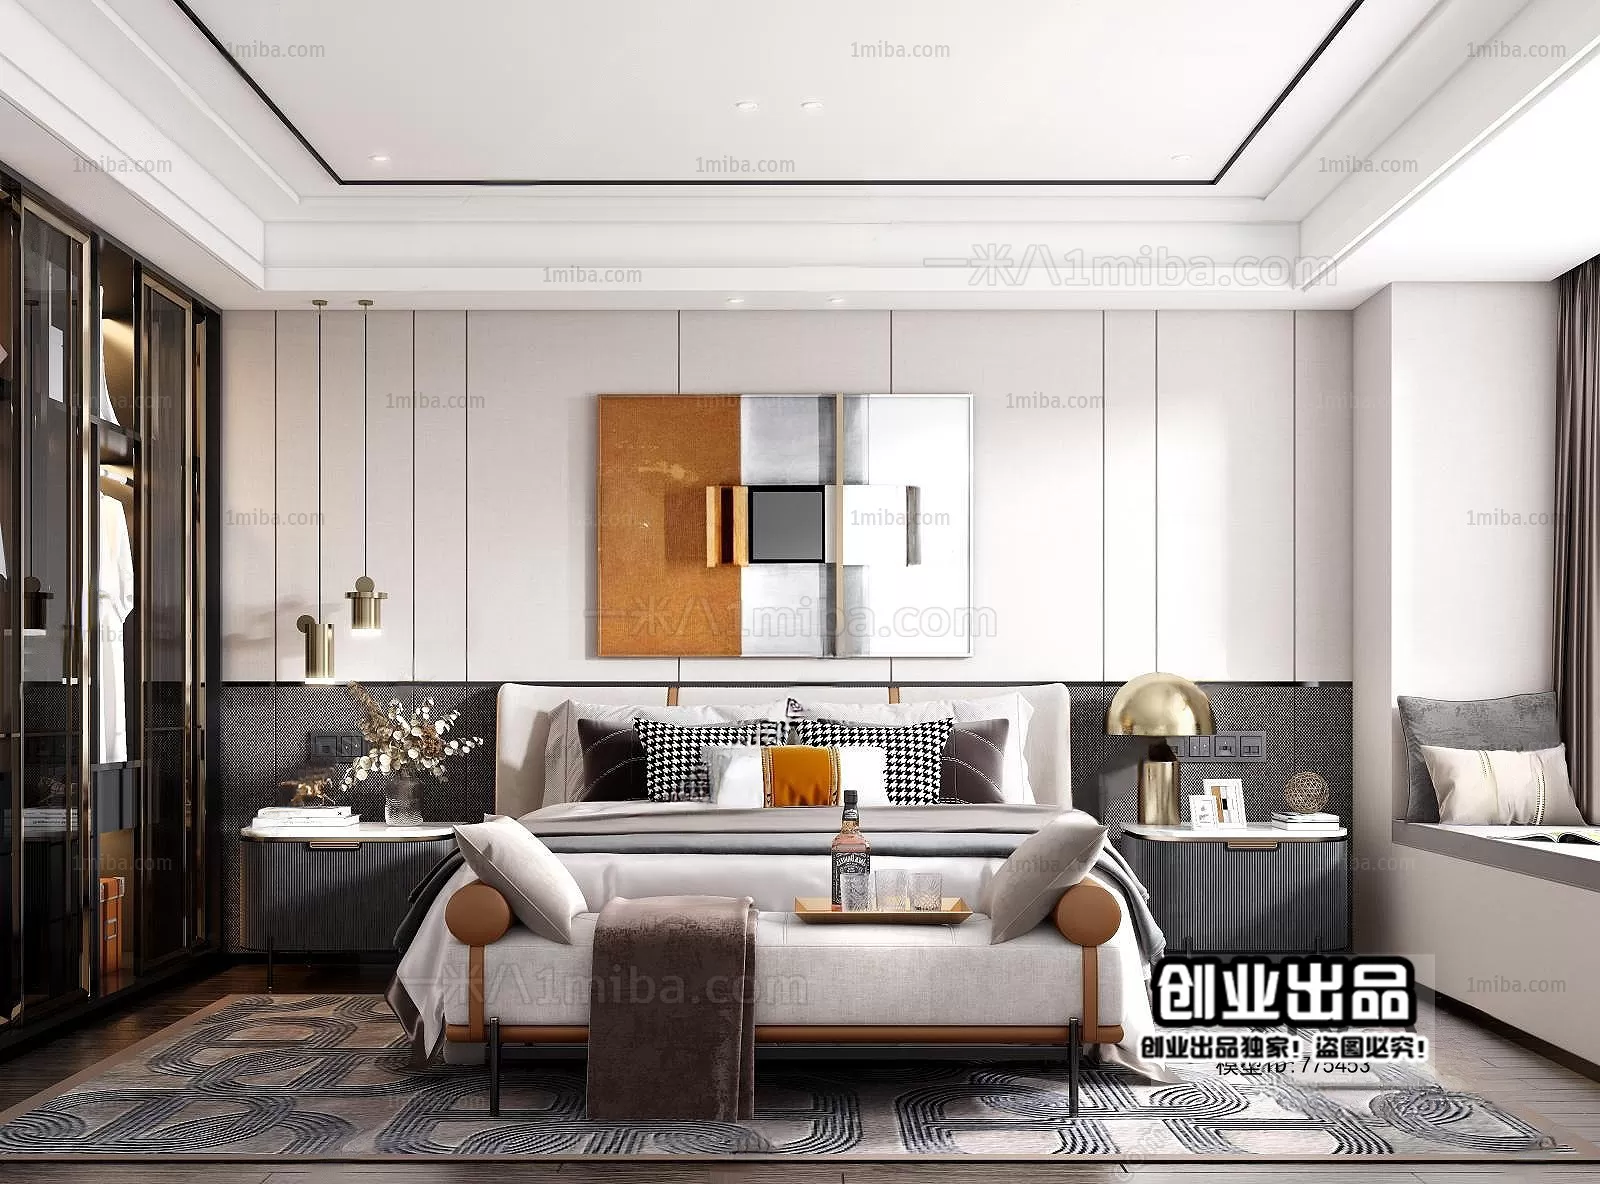 Bedroom – Modern Interior Design – 3D Models – 140